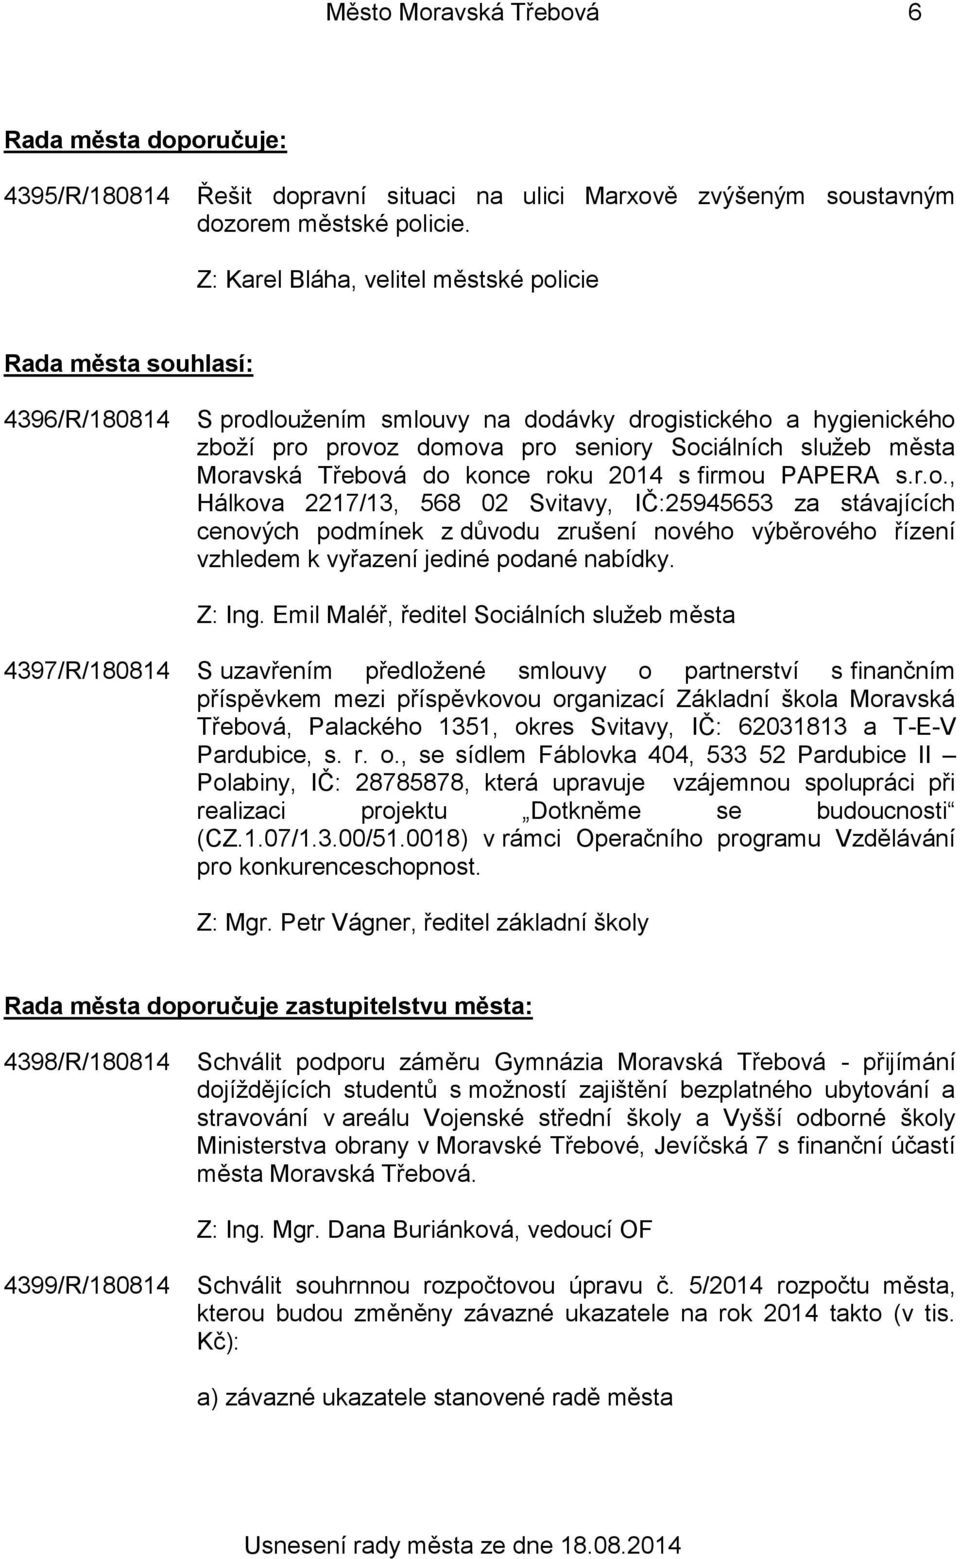 Moravská Třebová do konce roku 2014 s firmou PAPERA s.r.o., Hálkova 2217/13, 568 02 Svitavy, IČ:25945653 za stávajících cenových podmínek z důvodu zrušení nového výběrového řízení vzhledem k vyřazení jediné podané nabídky.